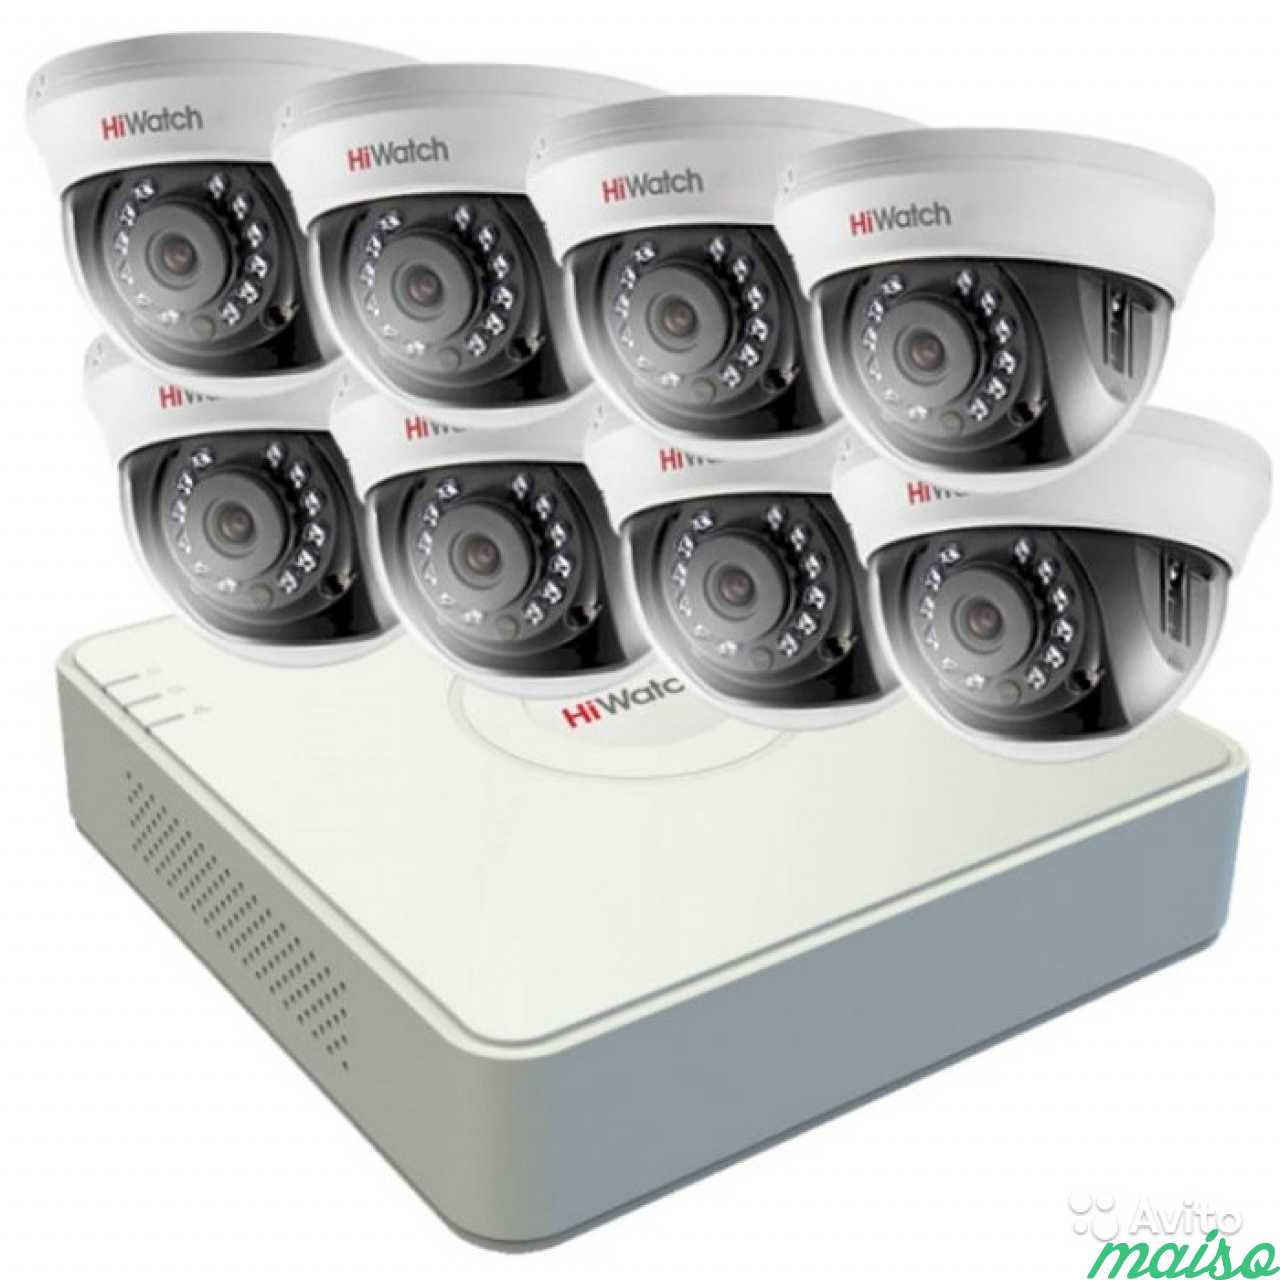 Регистратор на 8 камер. Комплект HIWATCH t209p. Комплект видеонаблюдения HIWATCH IP 4. Комплект видеонаблюдения Hikvision на 4 камеры IP. Комплект 8 камер HIWATCH.